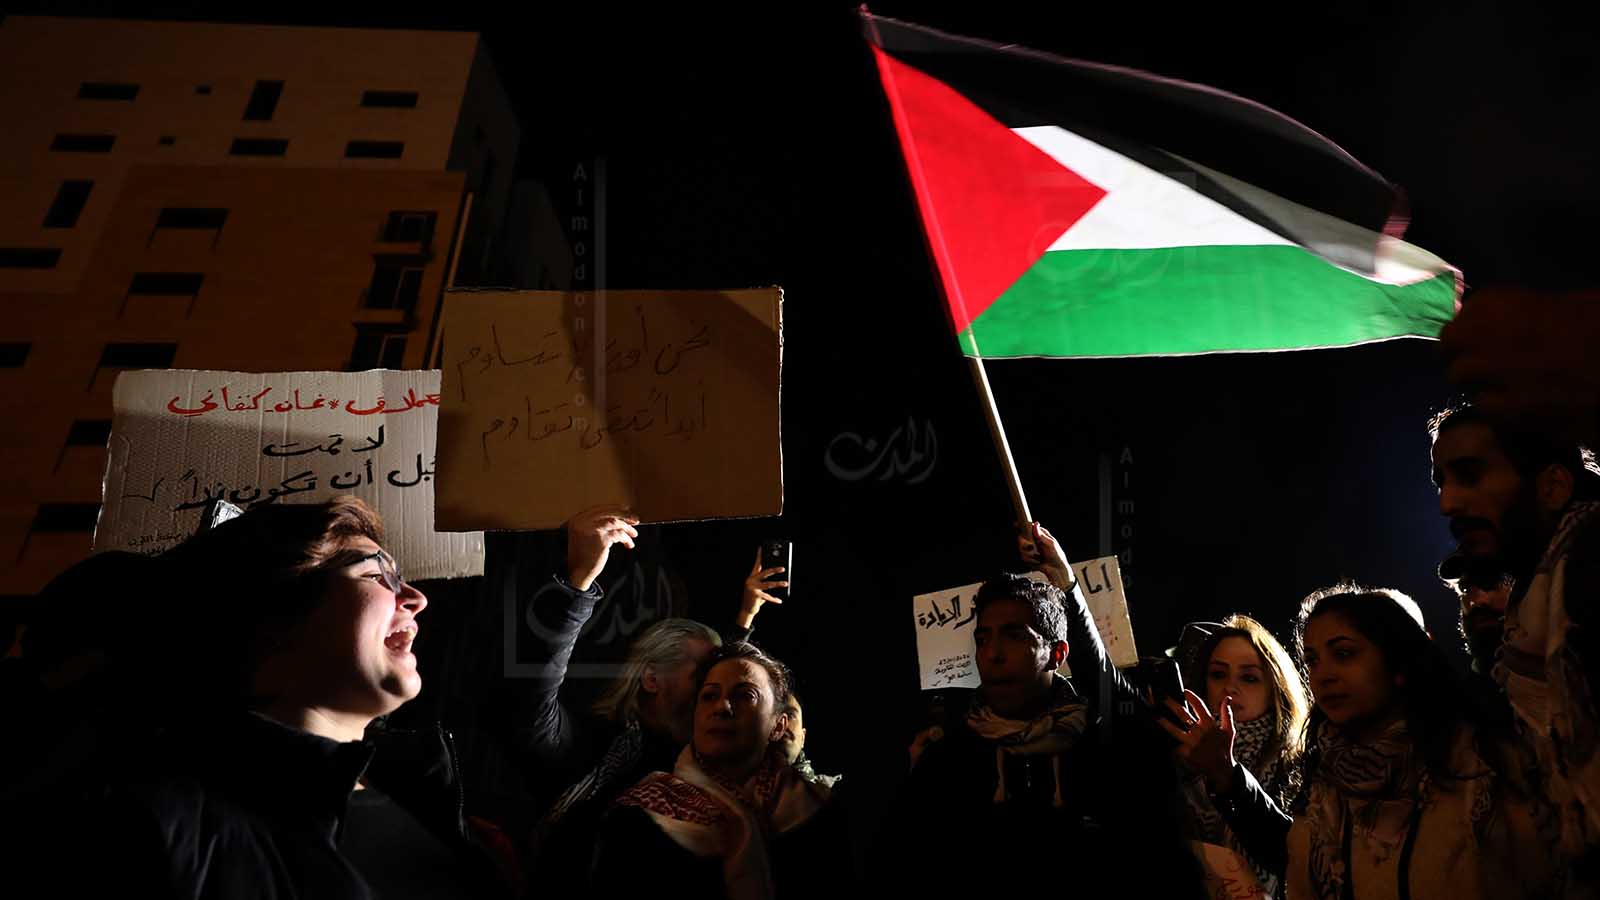 أردنية من أصل فلسطيني تُصالحُها 17 تشرين مع اللبنانيين